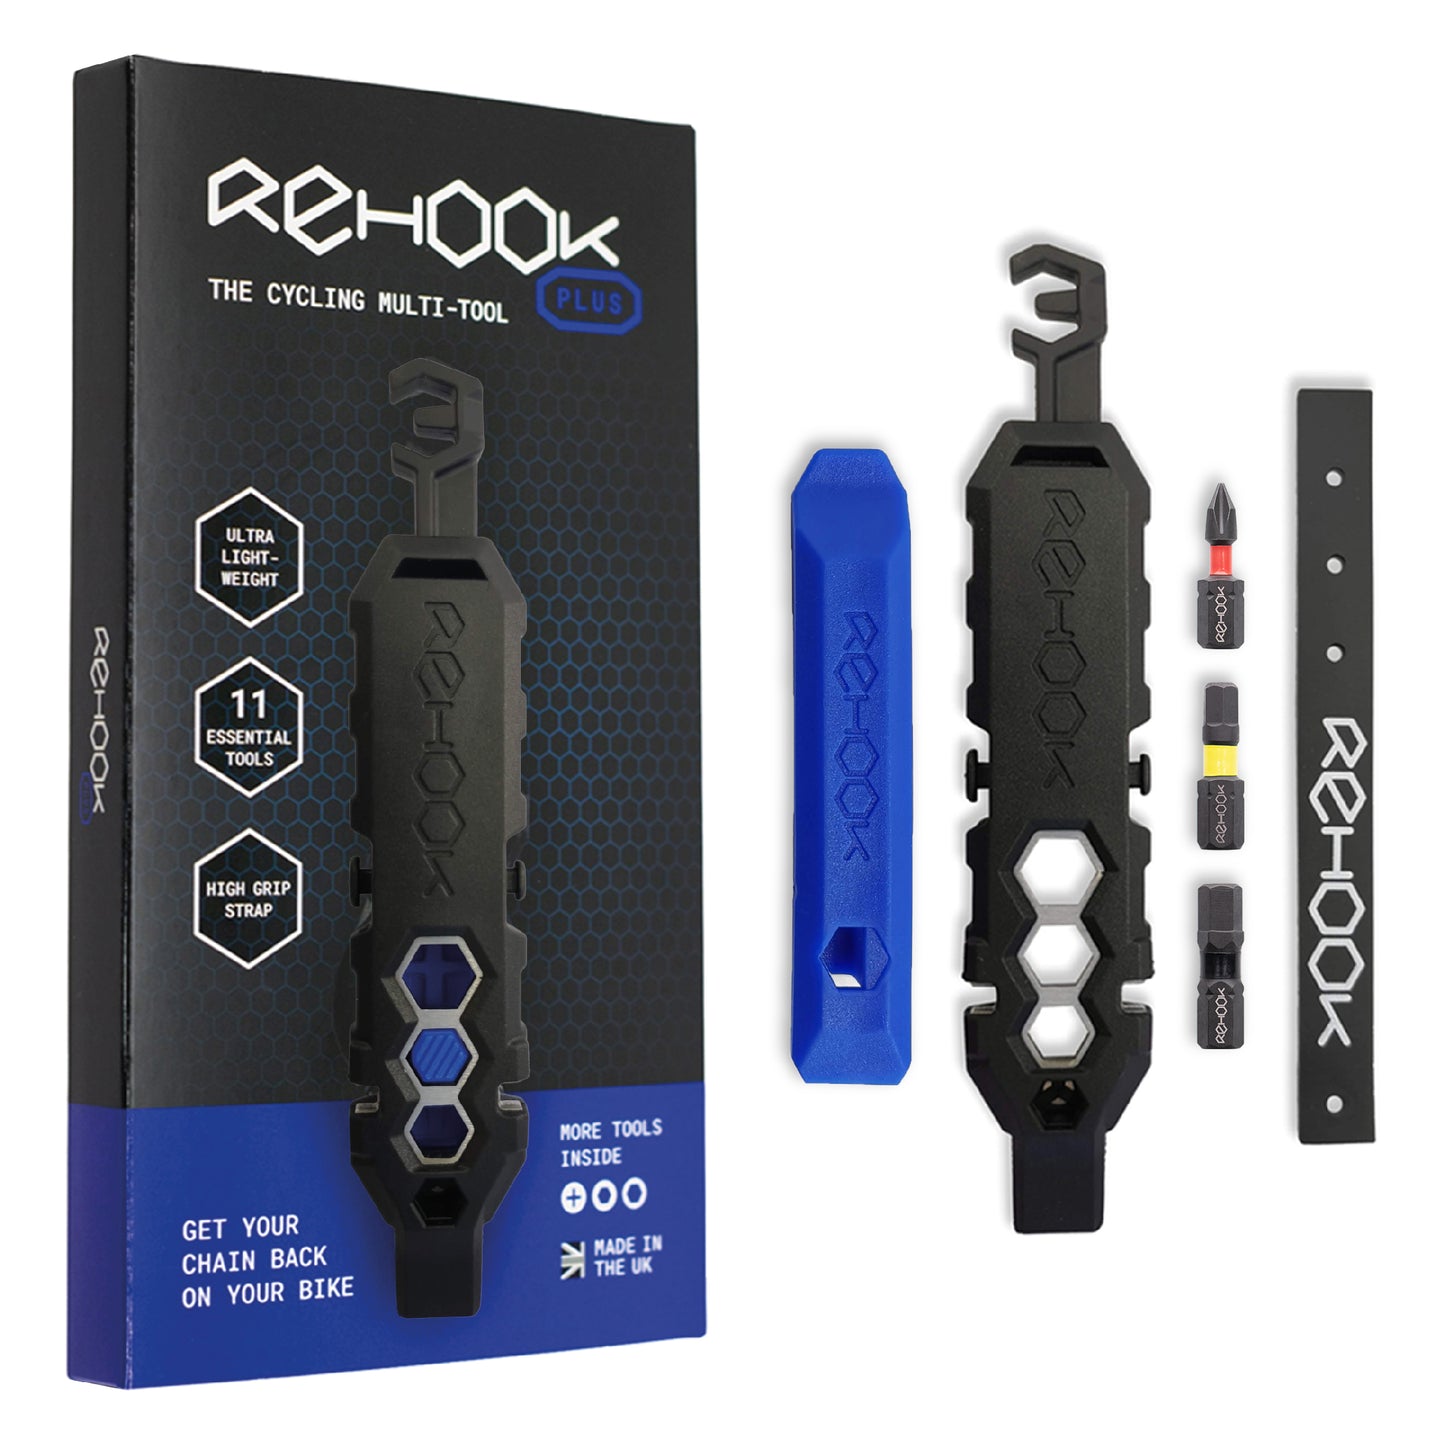 Rehook PLUS Multi-Tool Bundle